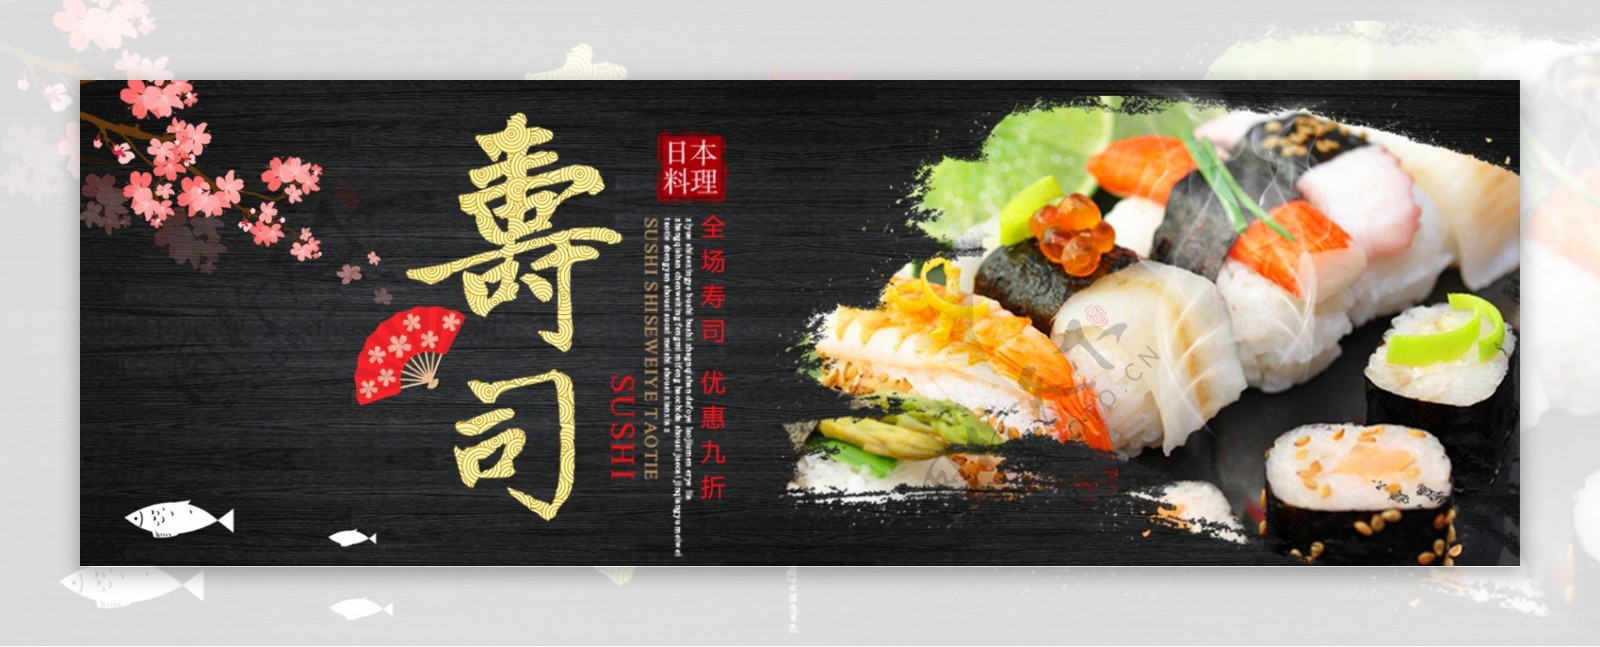 黑色黑板简约美食寿司食品电商banner